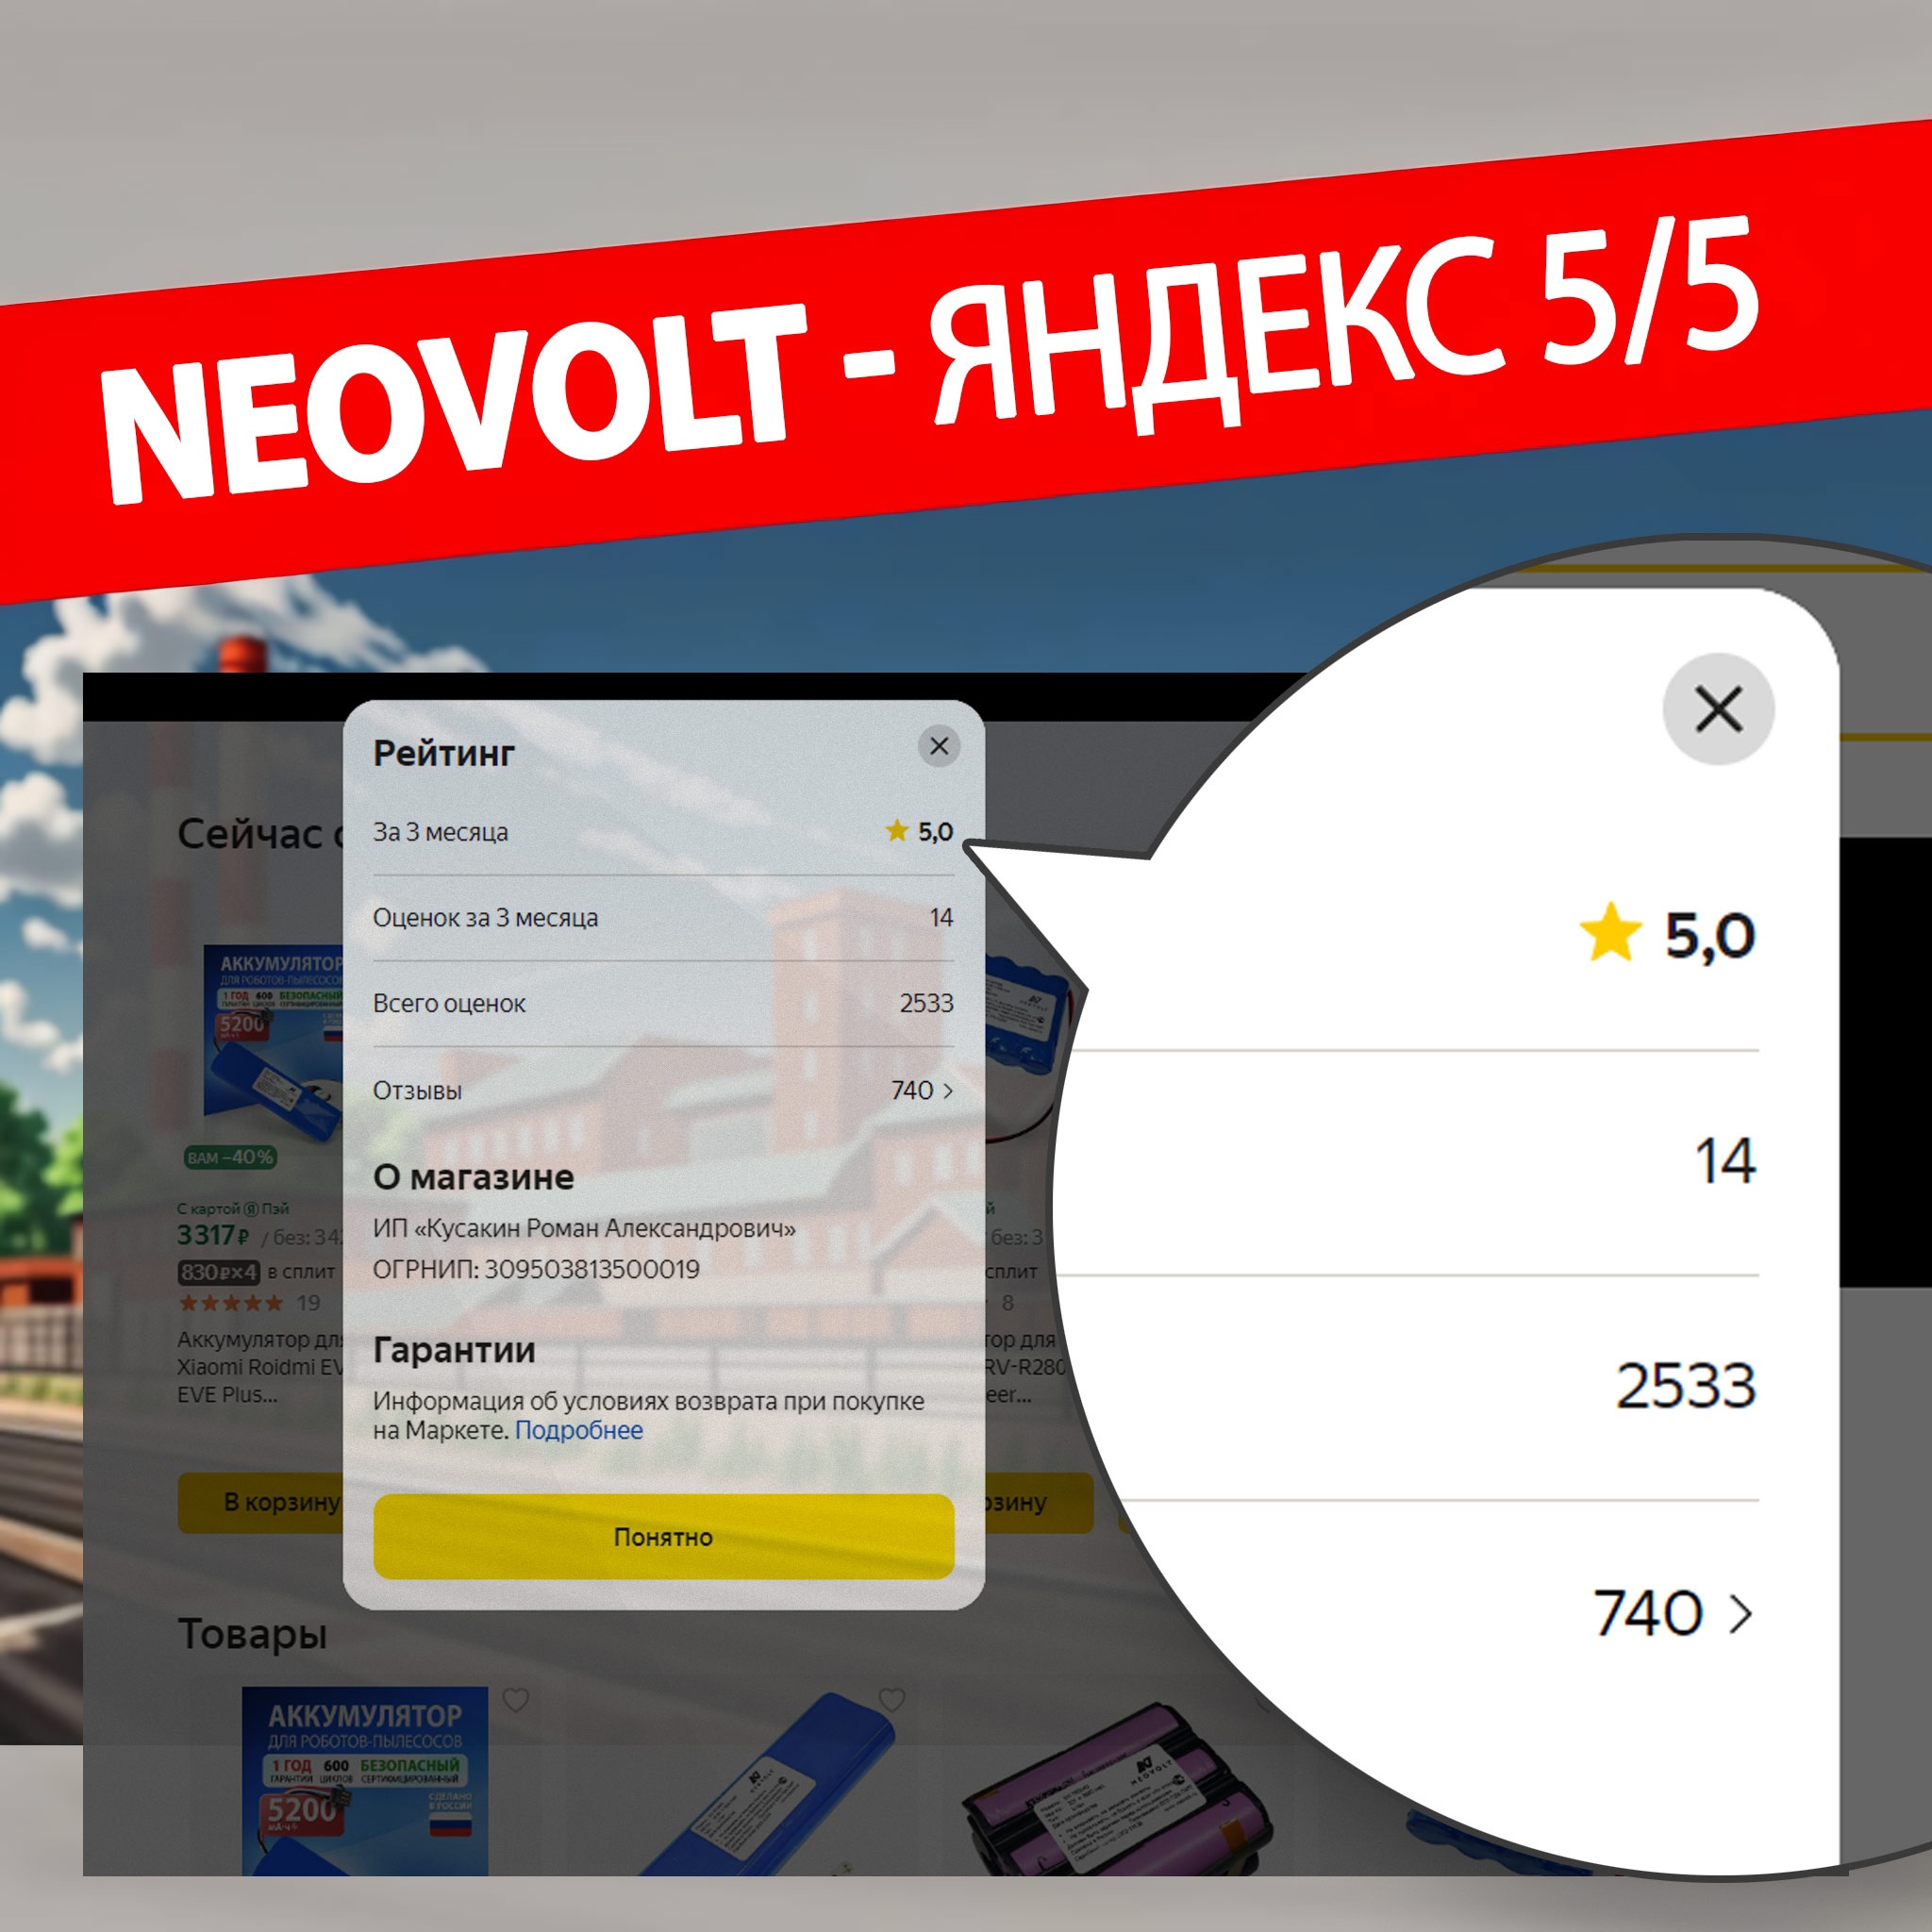 Neovolt: Надёжные аккумуляторы. Рейтинг компании в 2024 году в Яндексе